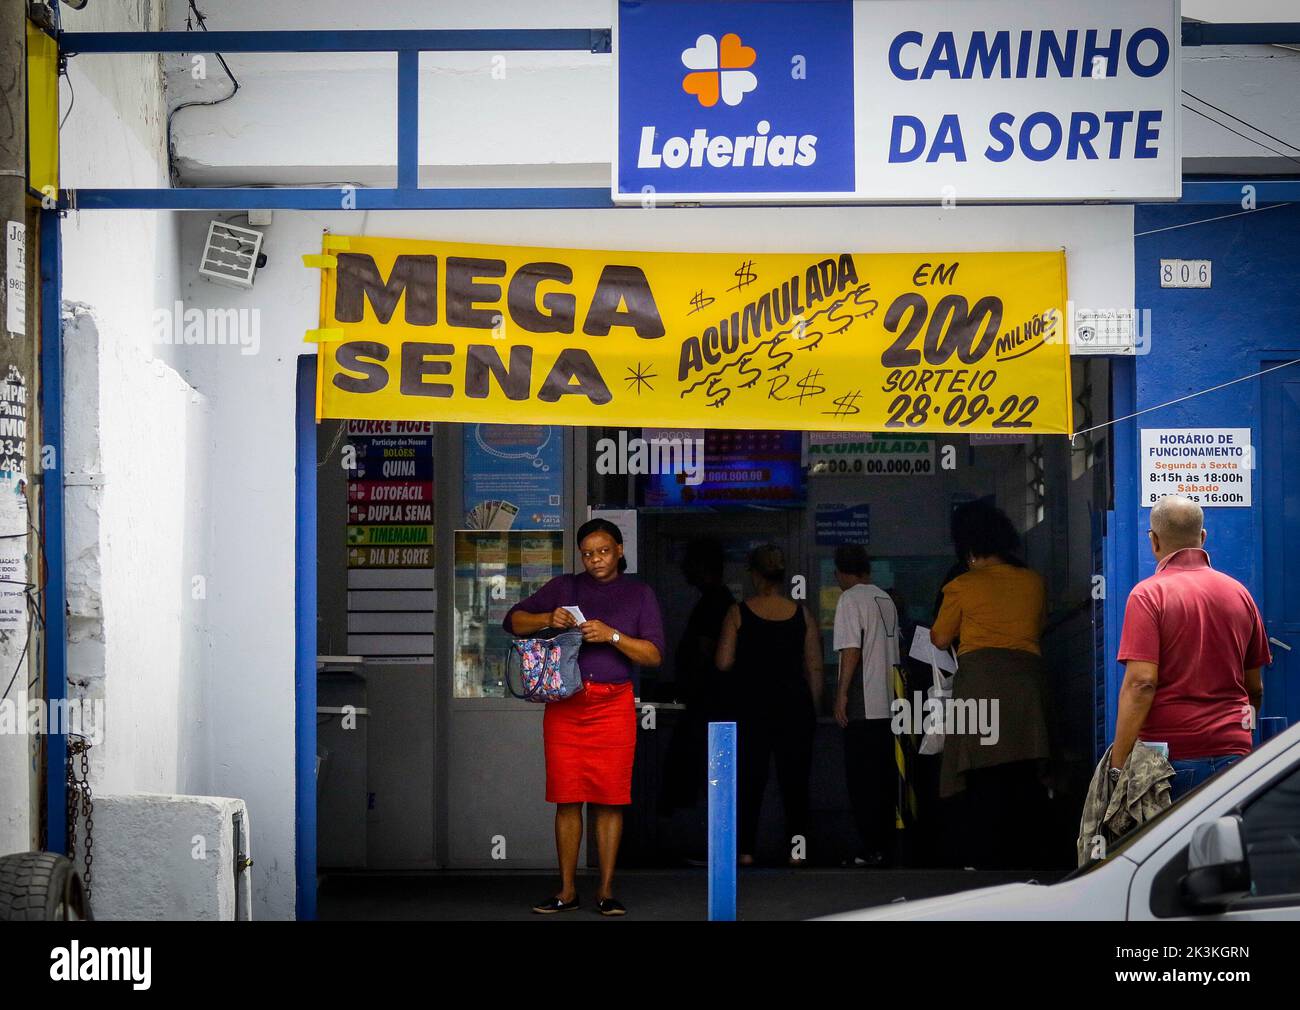 São PAULO, SP - 27.09.2022: MEGA SENA PAGA 200 MILHÕES - l'estrazione per il concorso Mega Sena 2524 che si svolgerà questo Mercoledì (28), pagherà al vincitore delle 6 decine un premio di 200 milioni di reais. Il concorso è accumulato per la 13th volta. (Foto: Aloisio Mauricio/Fotoarena) Foto Stock